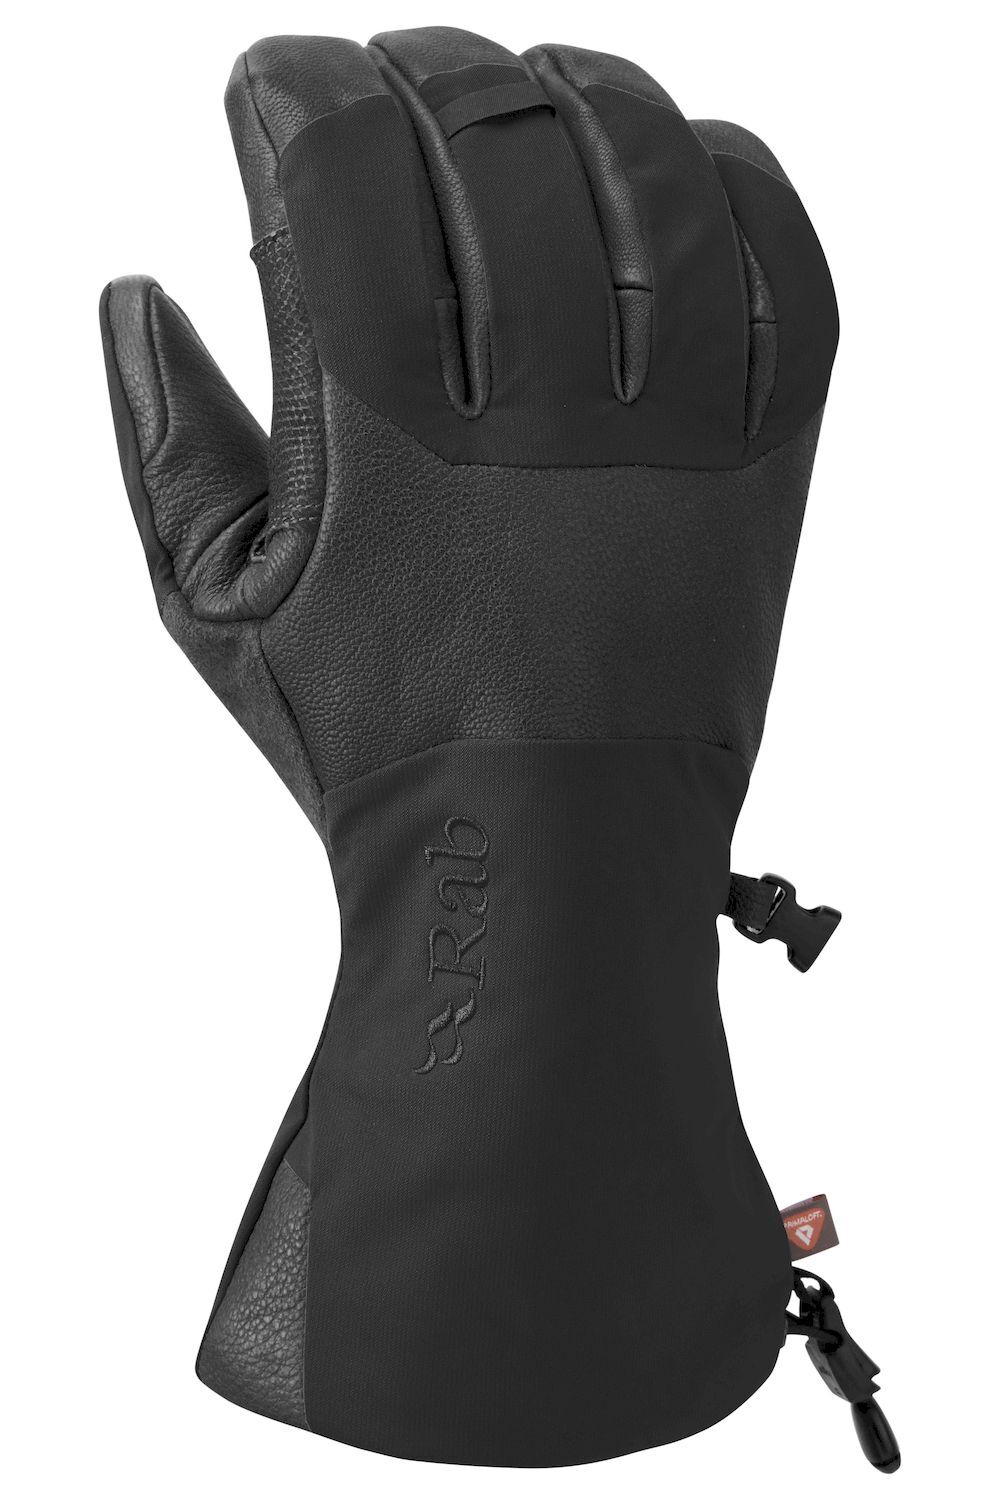 Rab Guide 2 GTX Gloves - Hanskat